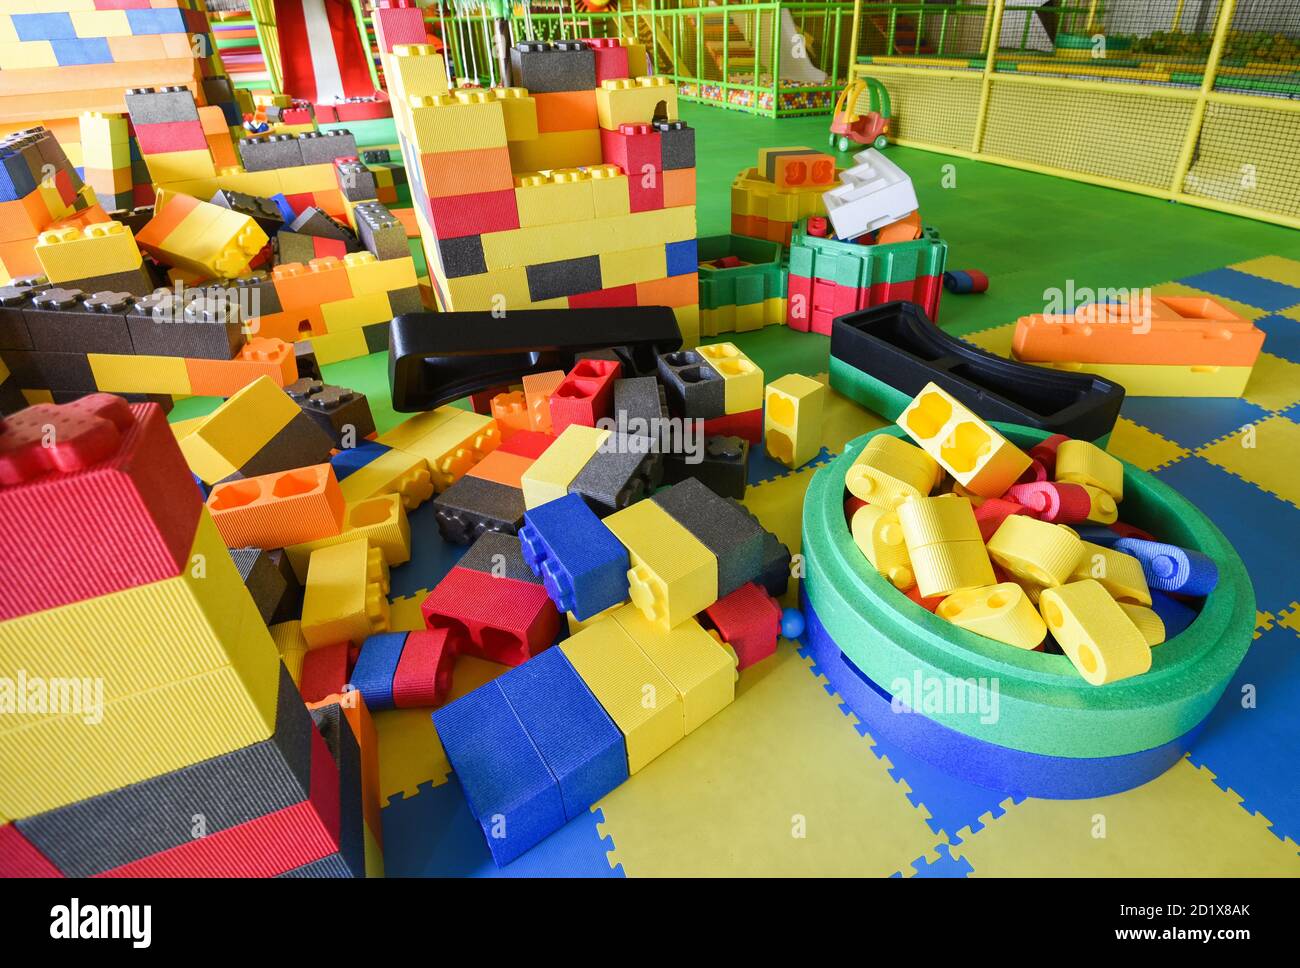 Aire de jeux pour enfants à l'intérieur du parc d'attractions avec jouet  Puzzle pour Jouer / à l'intérieur de la belle aire de jeux pour enfants  jouets en plastique coloré de la